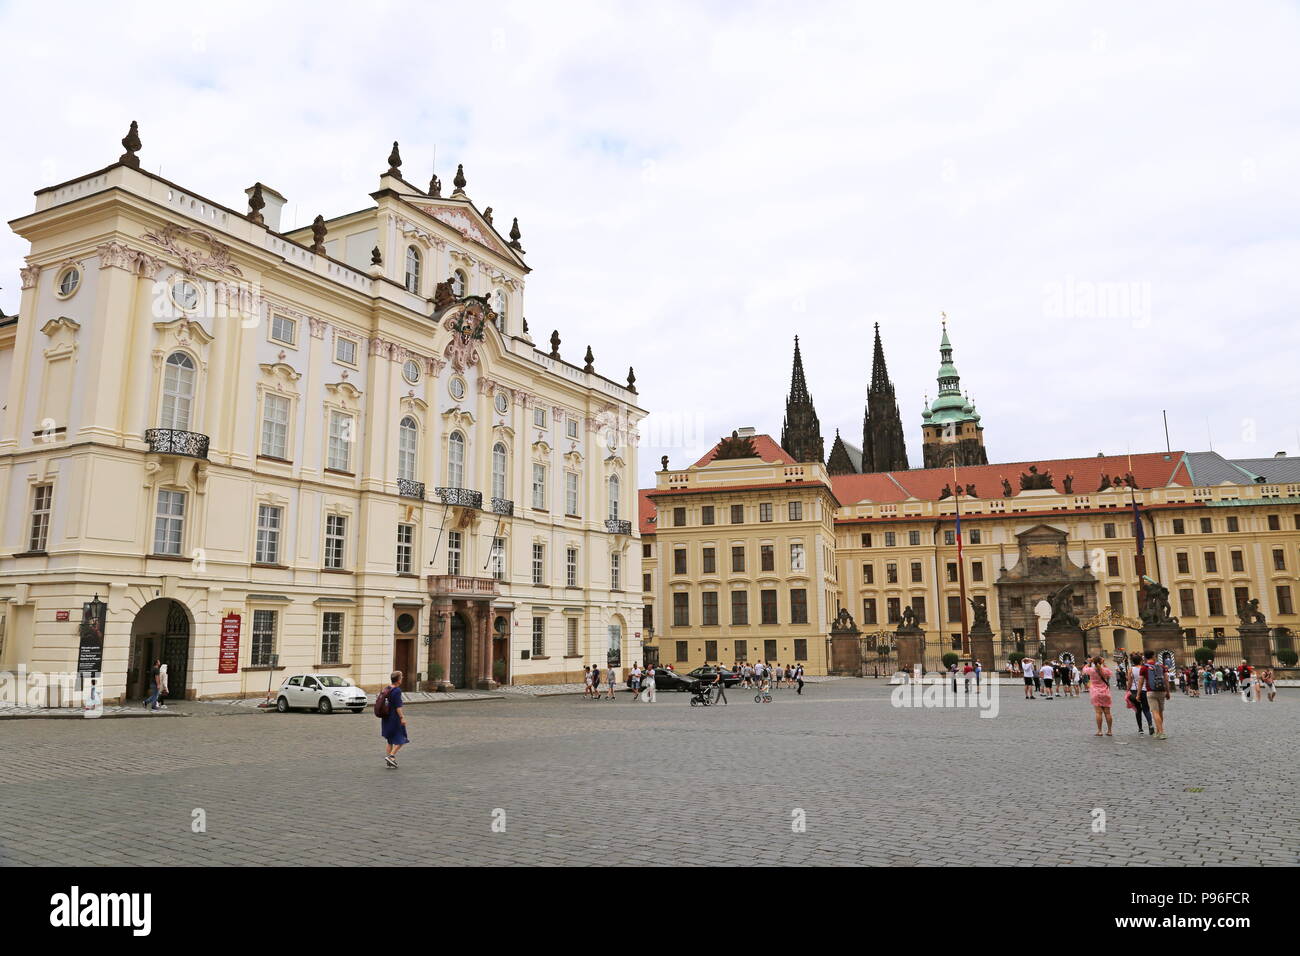 Archbishop's Palace and Prague Castle, Hradčanské Náměstí, Hradčany, Prague, Czechia (Czech Republic), Europe Stock Photo